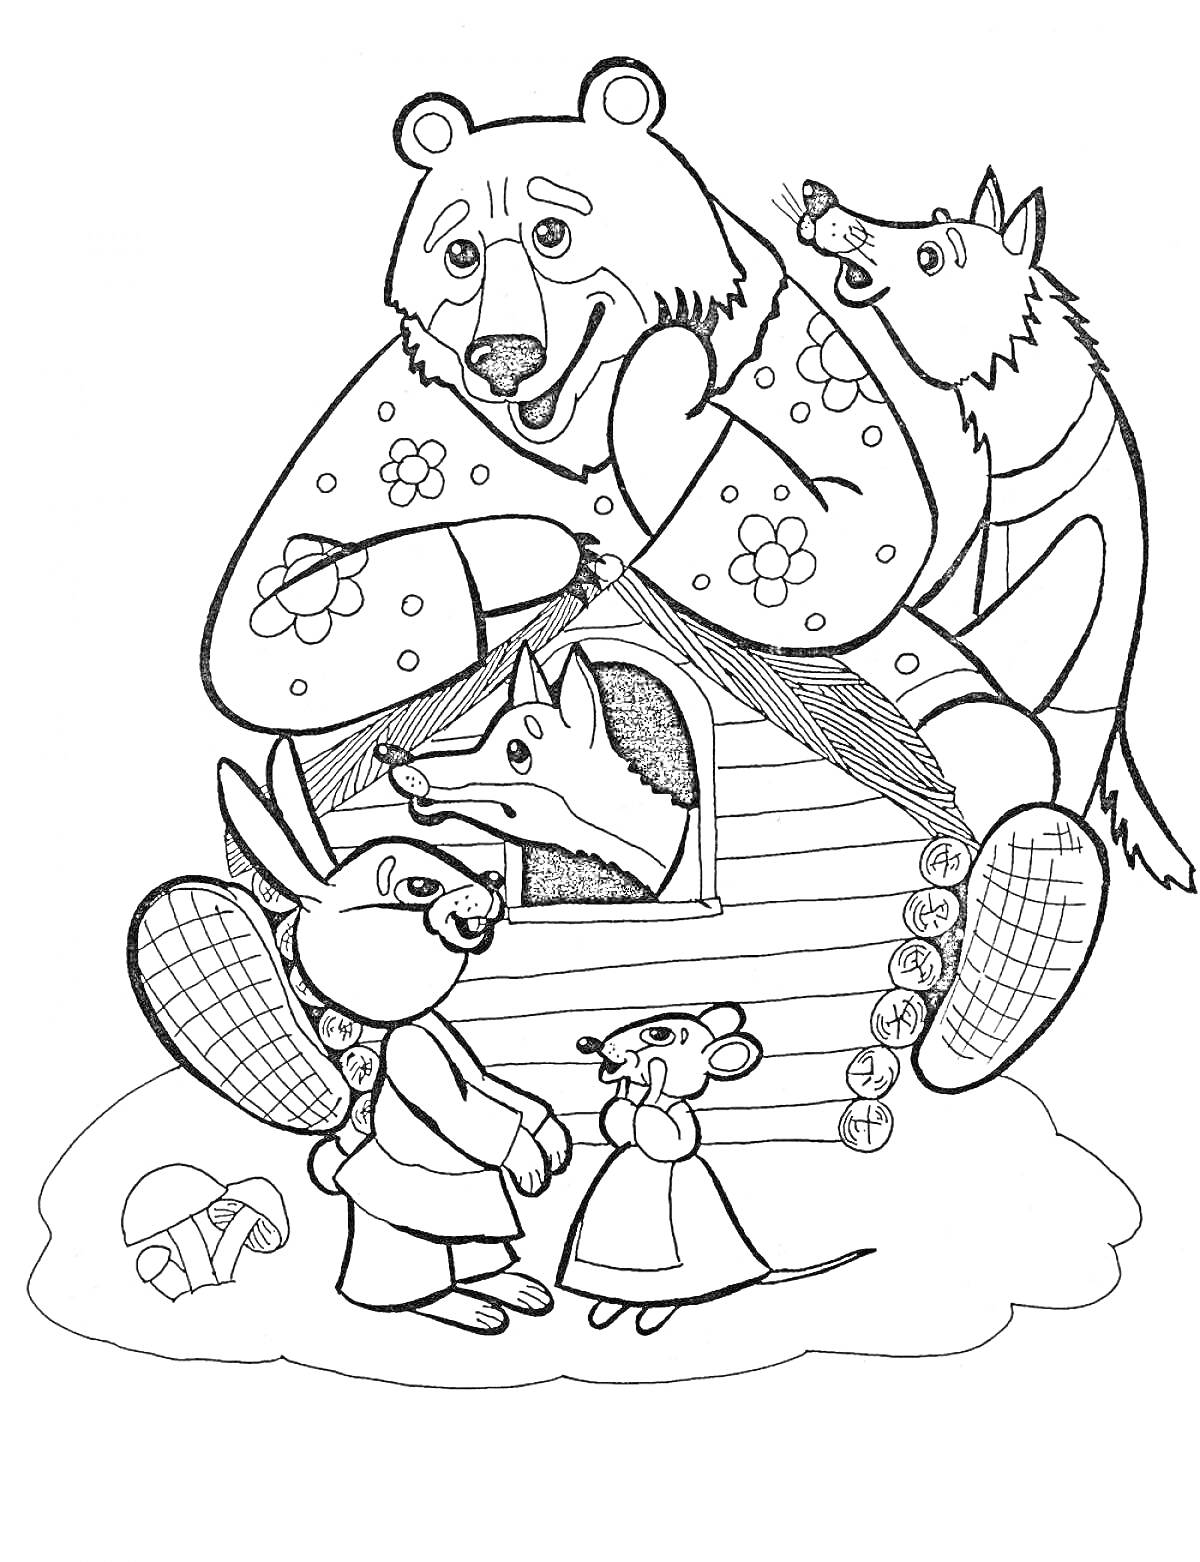 Раскраска Теремок с медведем, волком, лисой, зайцем и мышкой